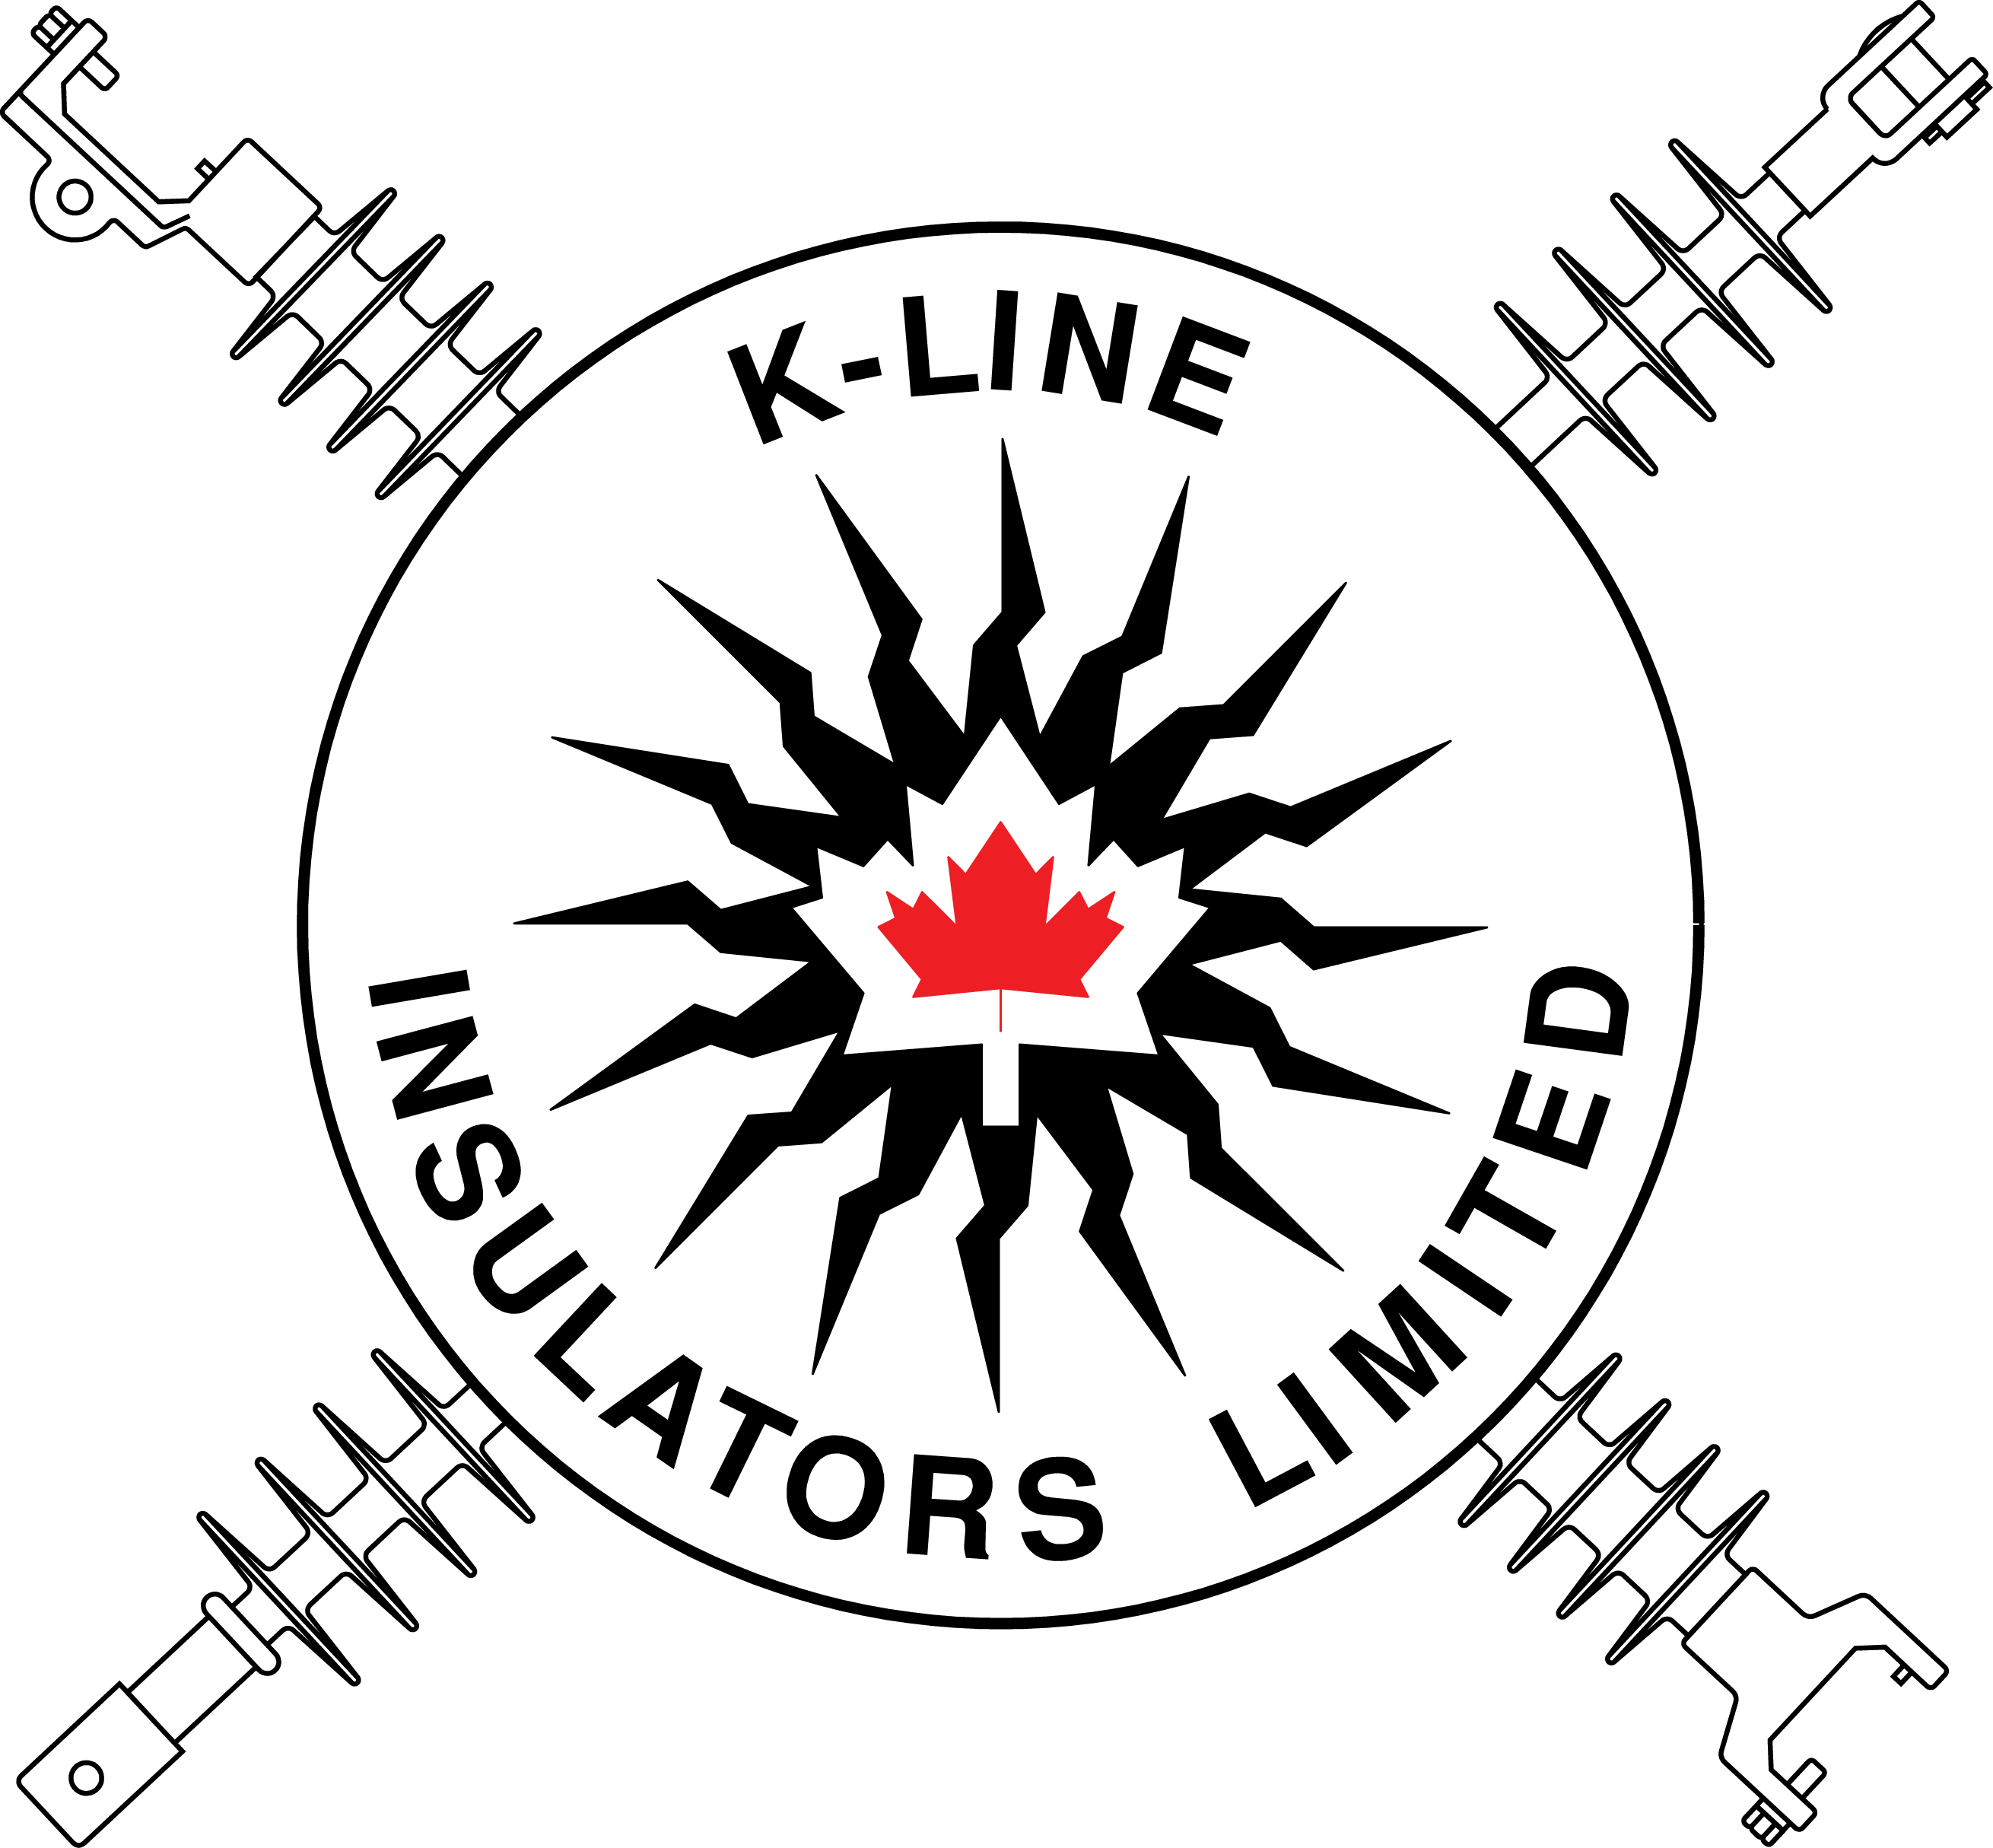 K-Line Insulators